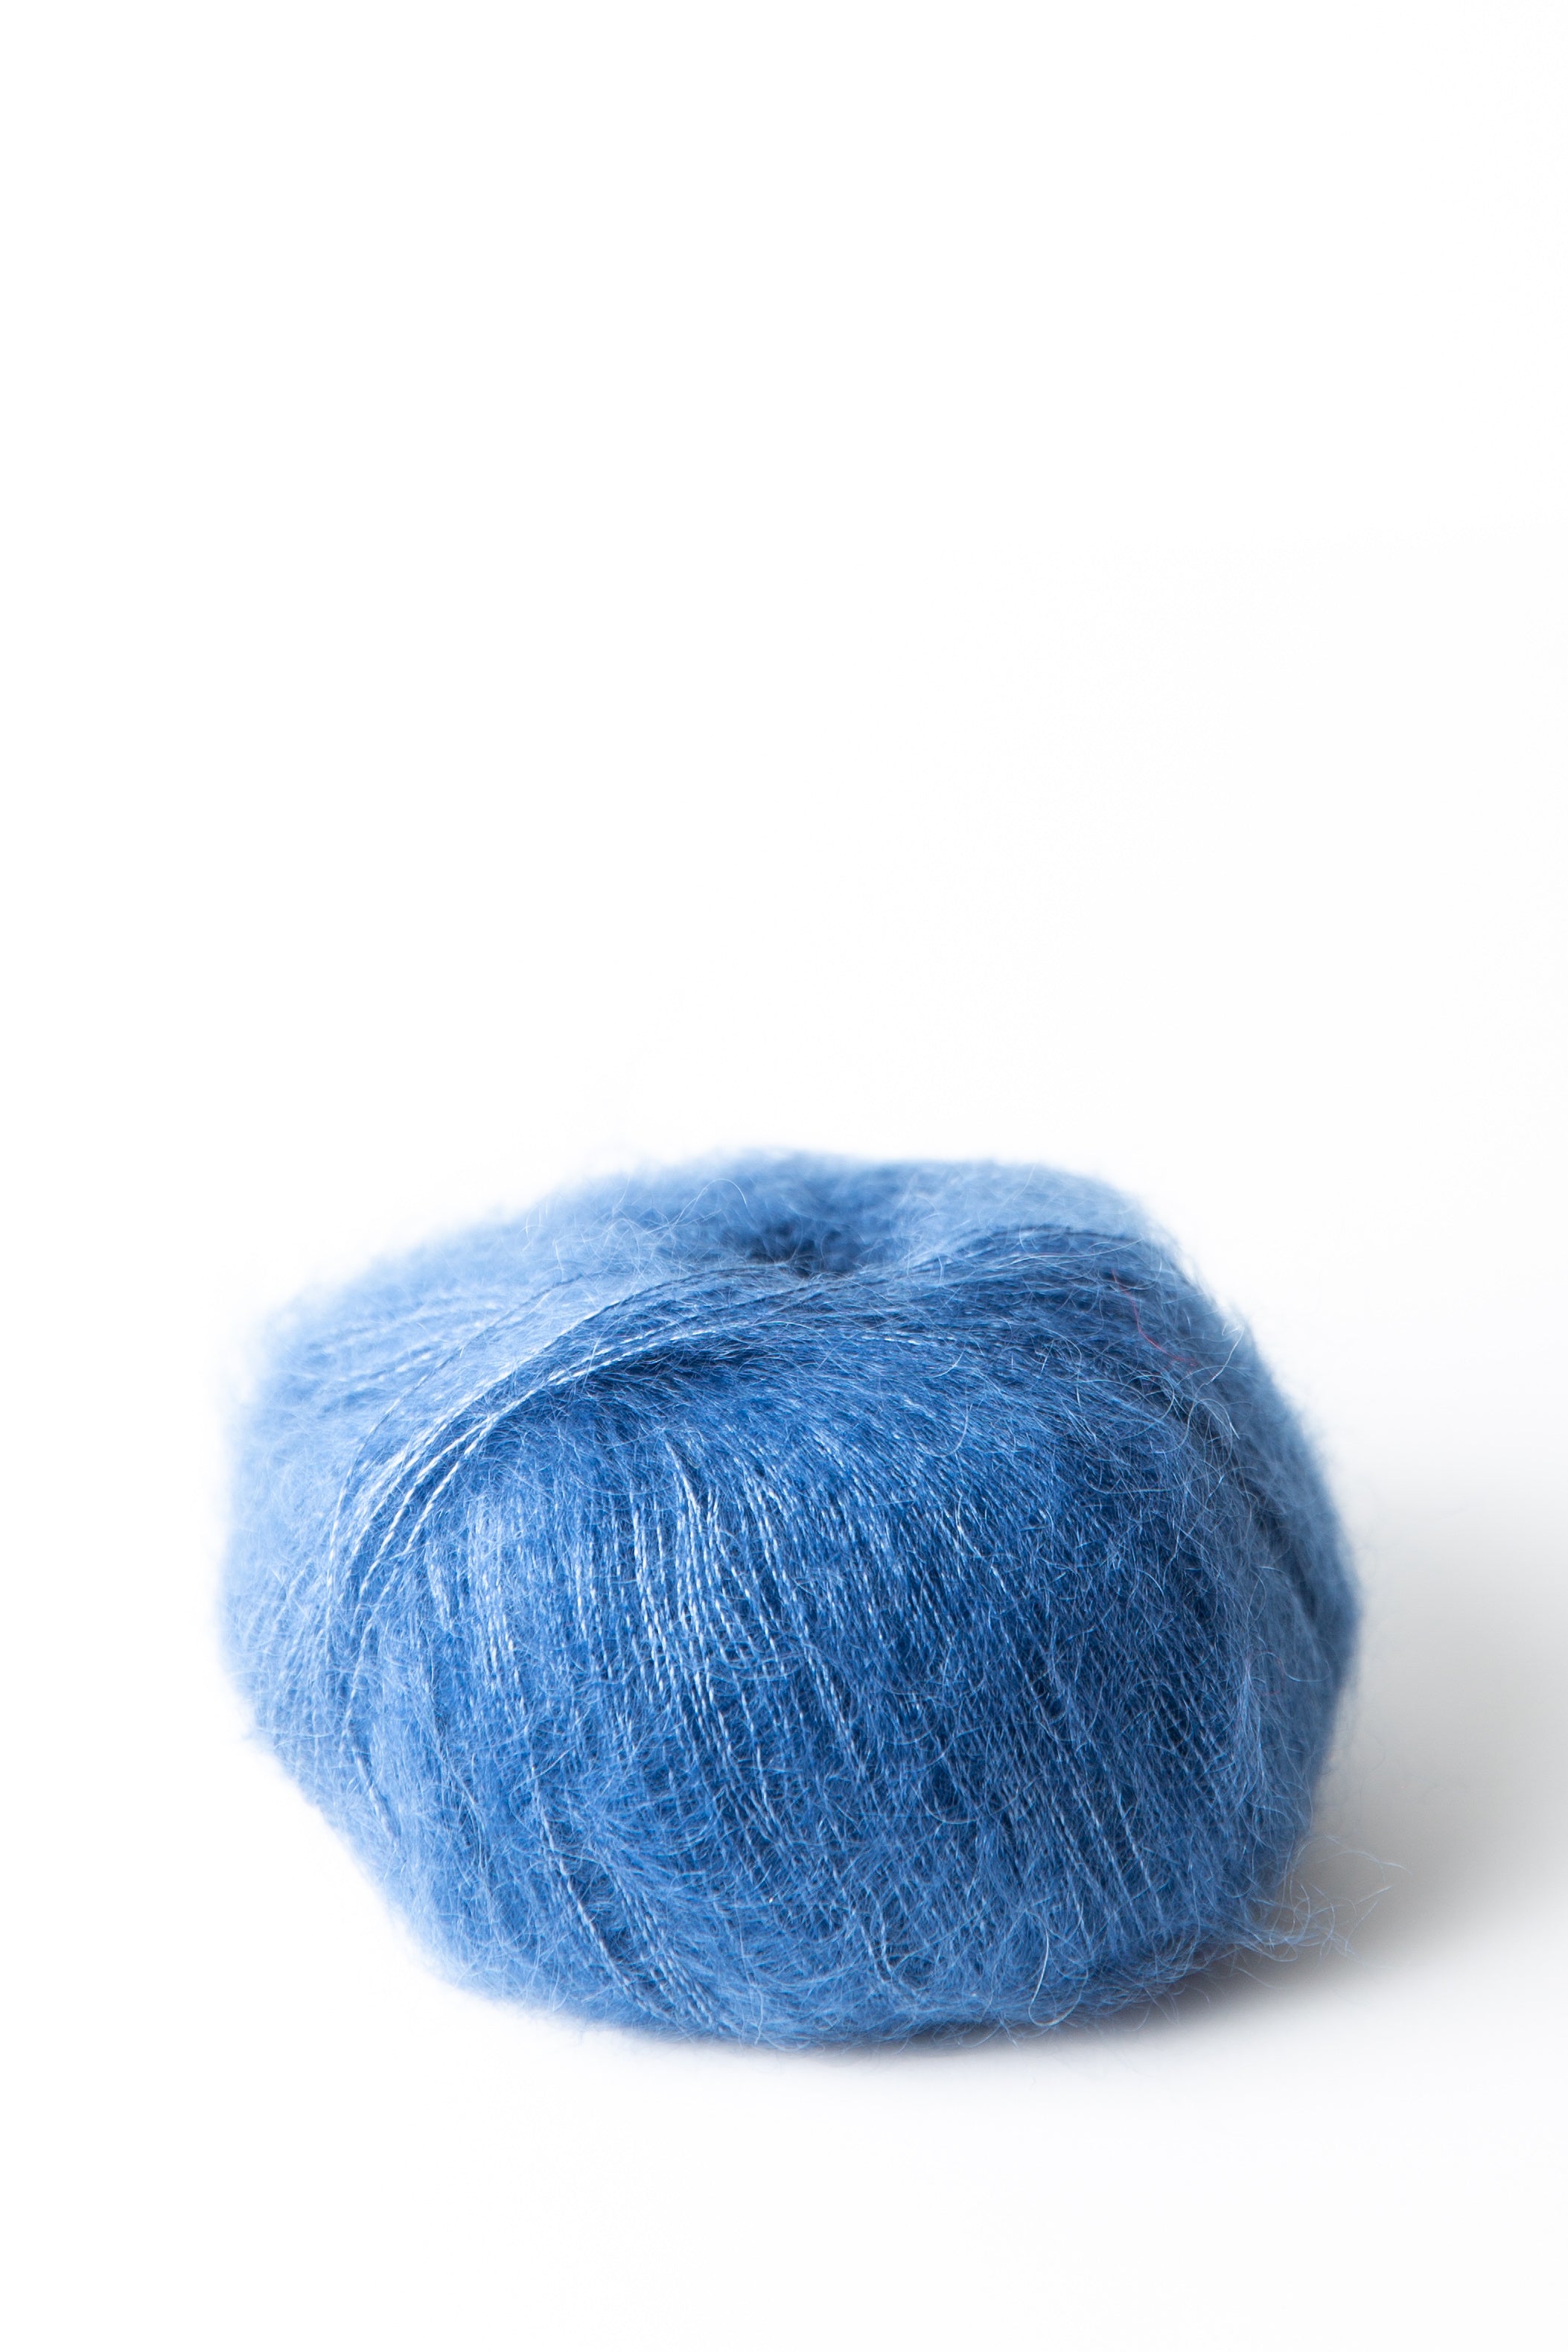 Ubrugelig Rengør rummet Irreplaceable Premia - Lamana | Shop Yarn Online at Beehive Wool Shop